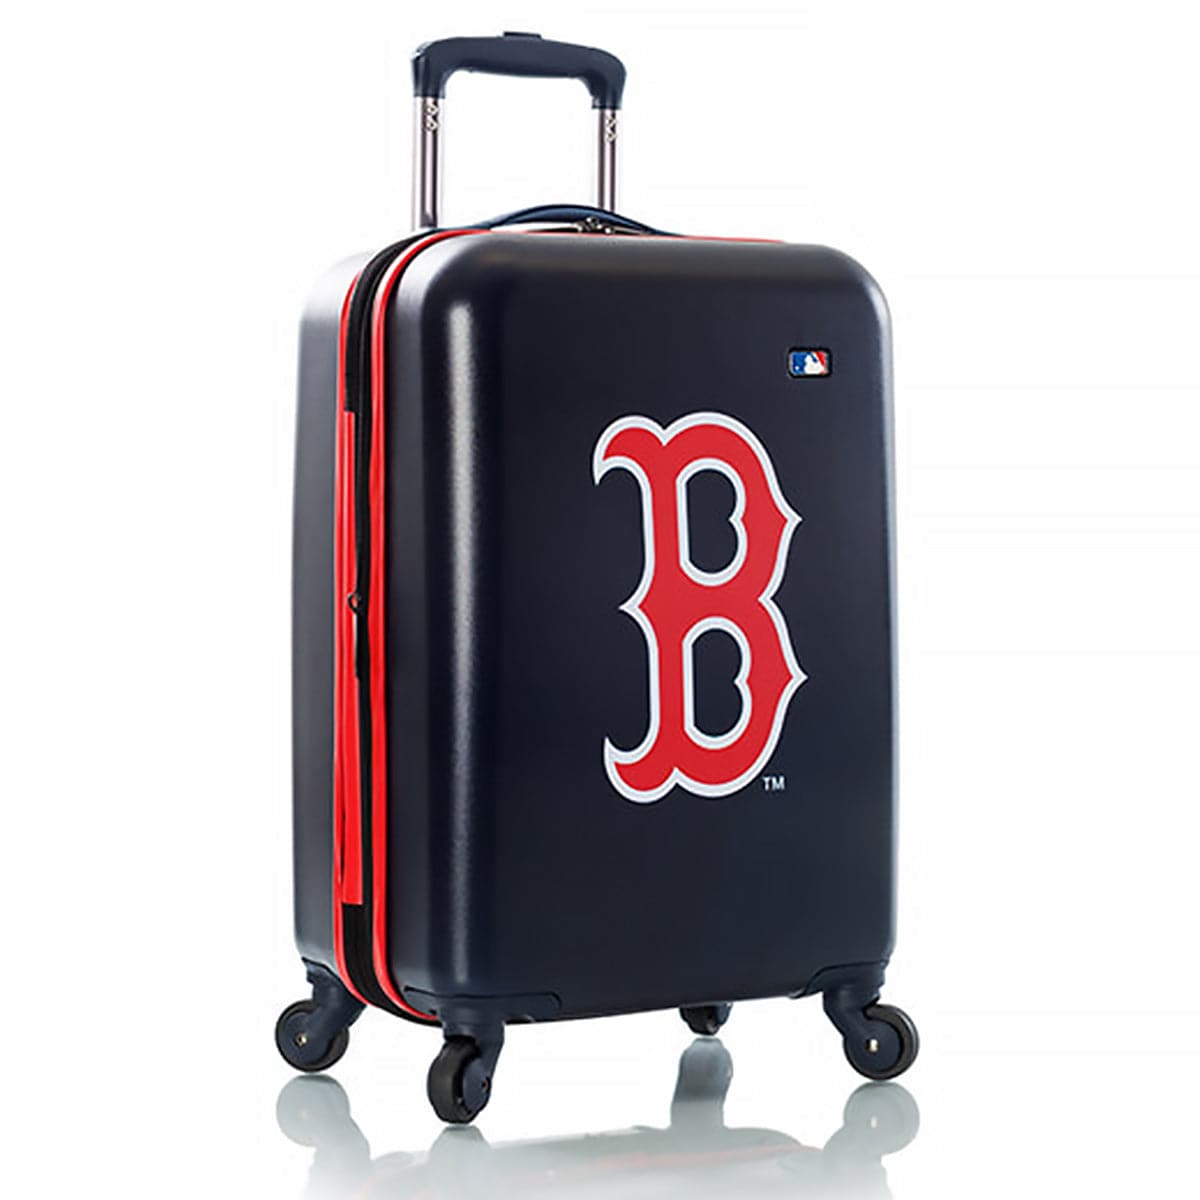 Heys Major League Sports 21" Kids Luggage